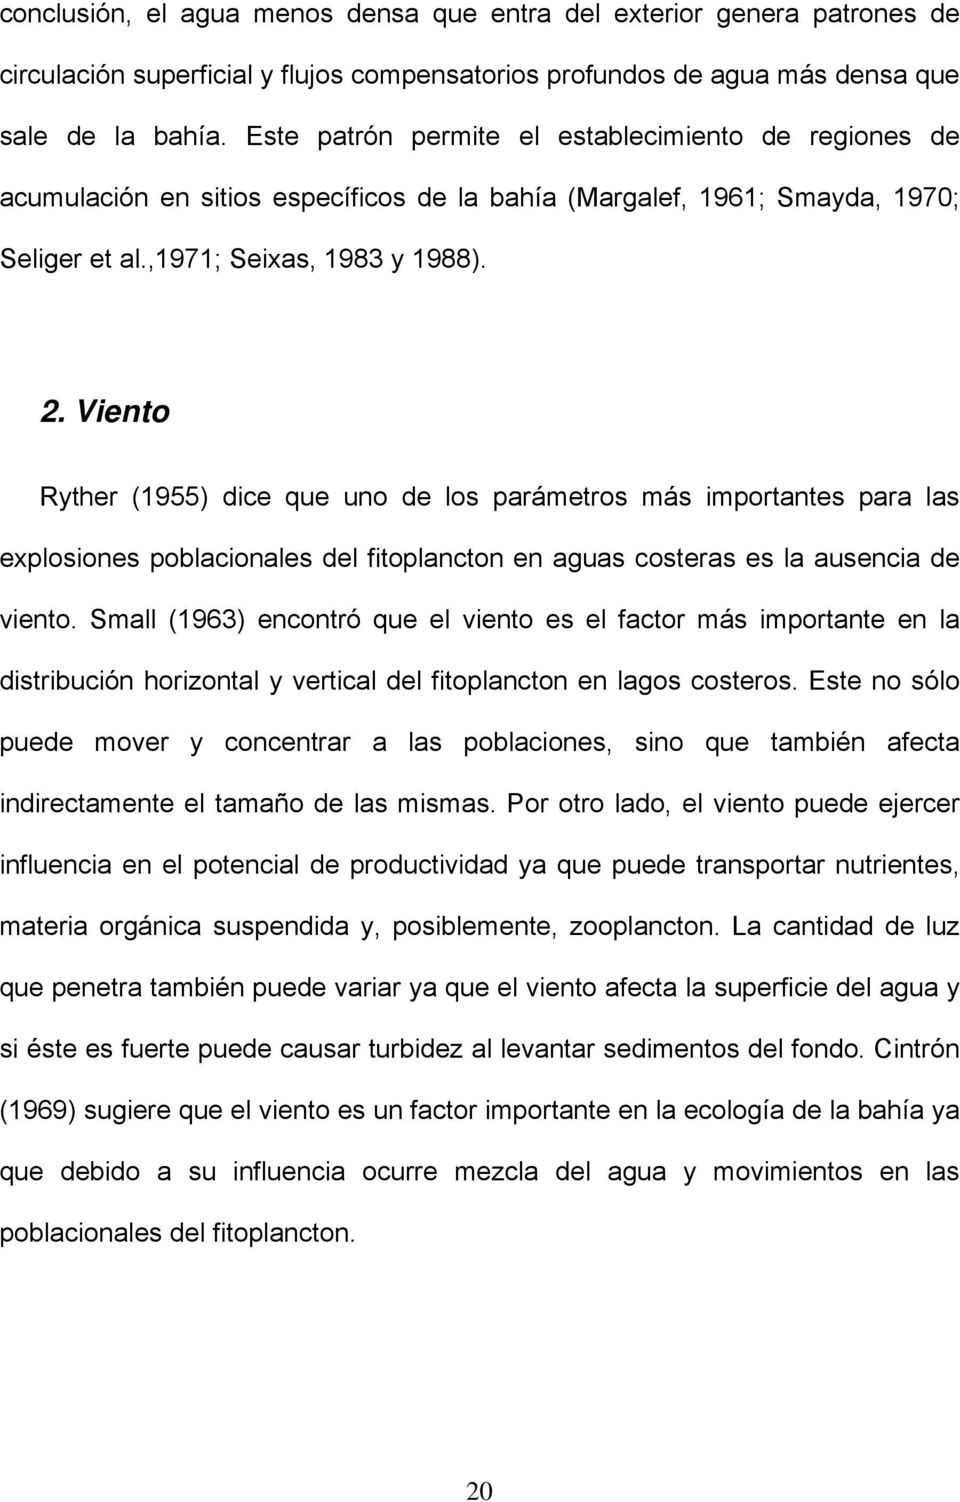 Viento Ryther (1955) dice que uno de los parámetros más importantes para las explosiones poblacionales del fitoplancton en aguas costeras es la ausencia de viento.